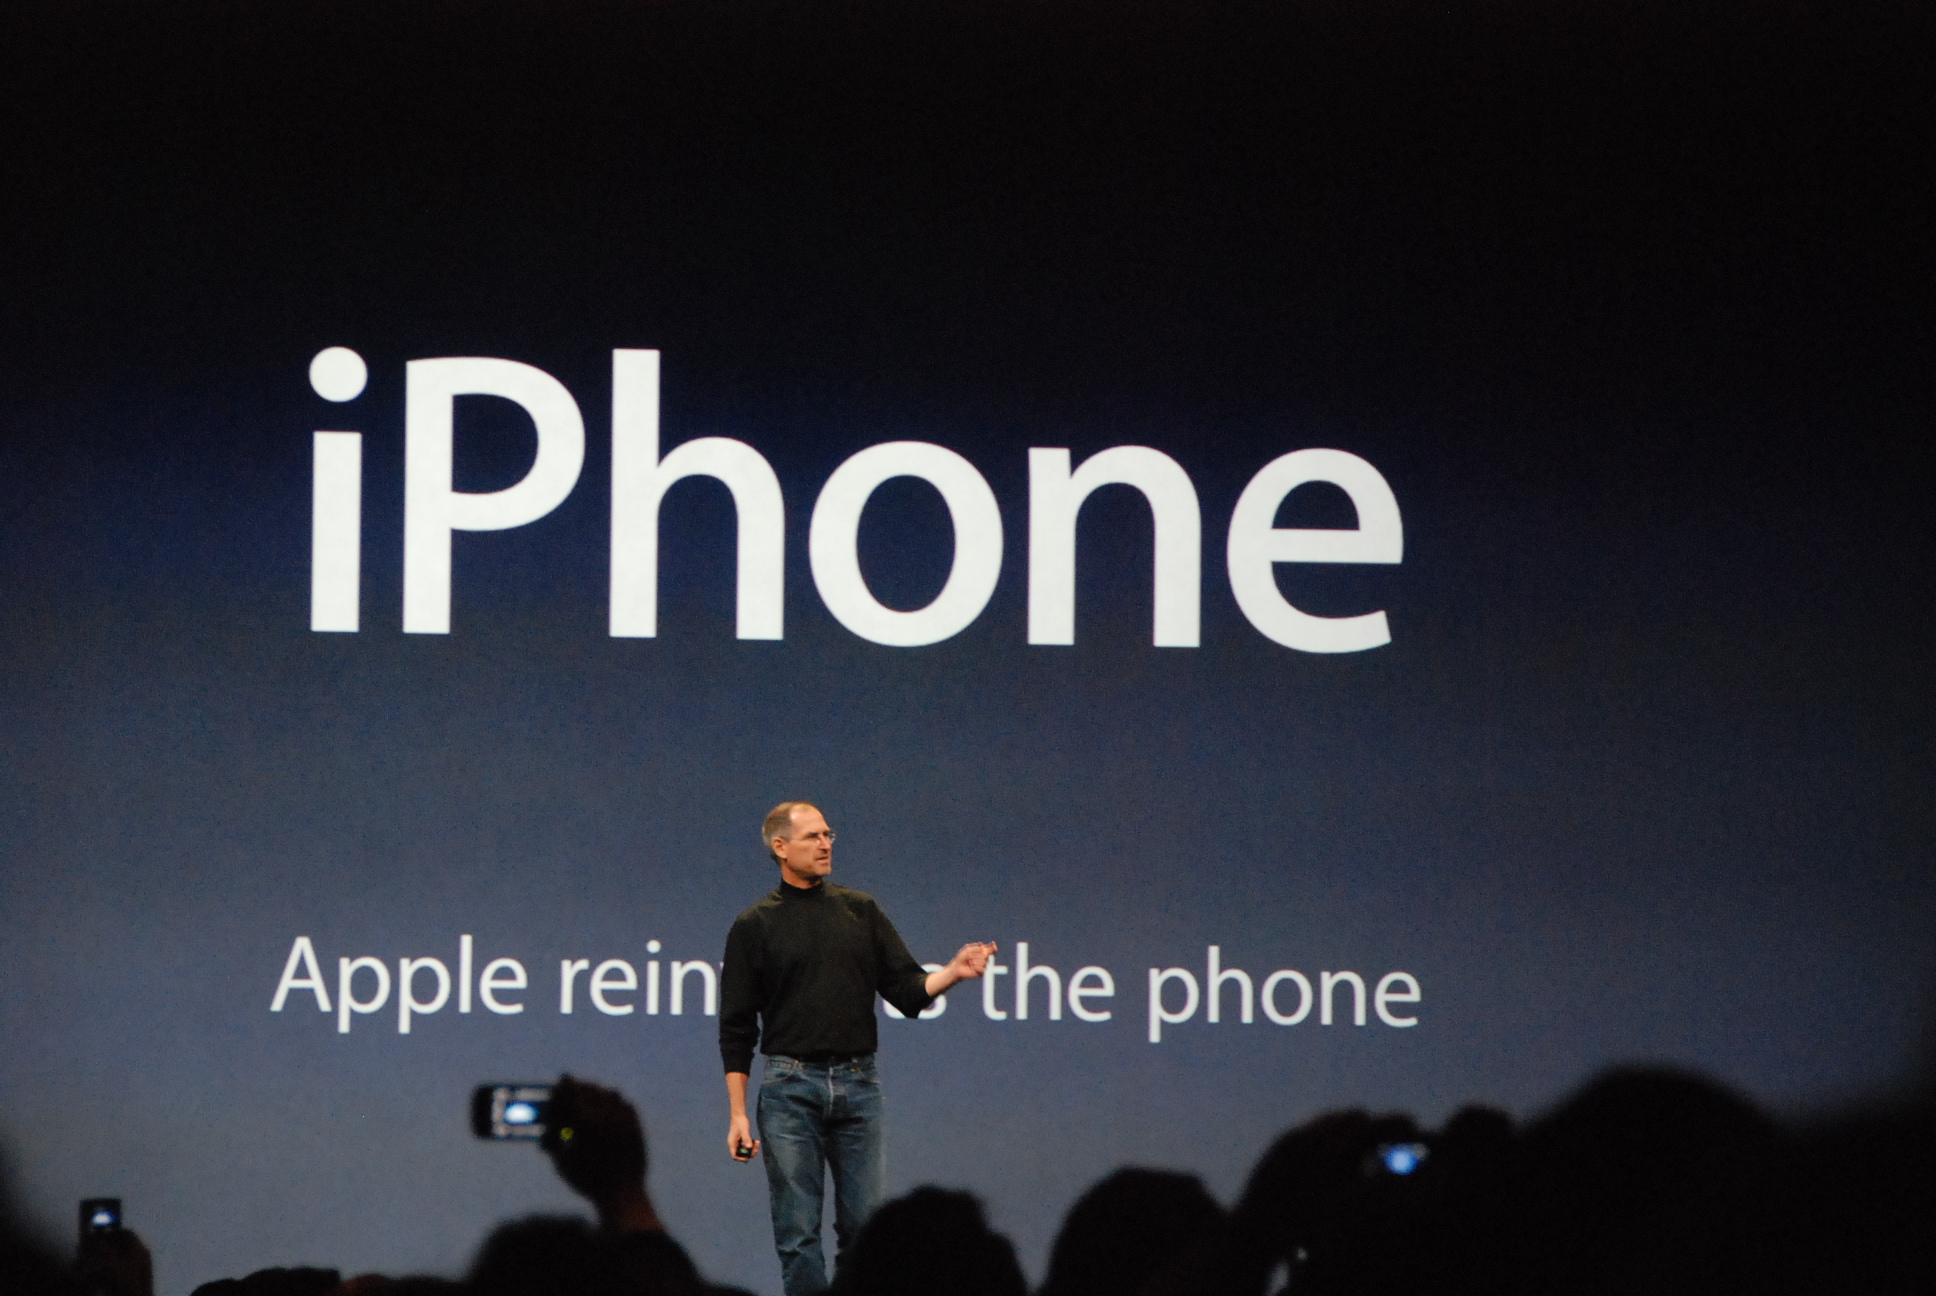 Steve_Jobs first iphone